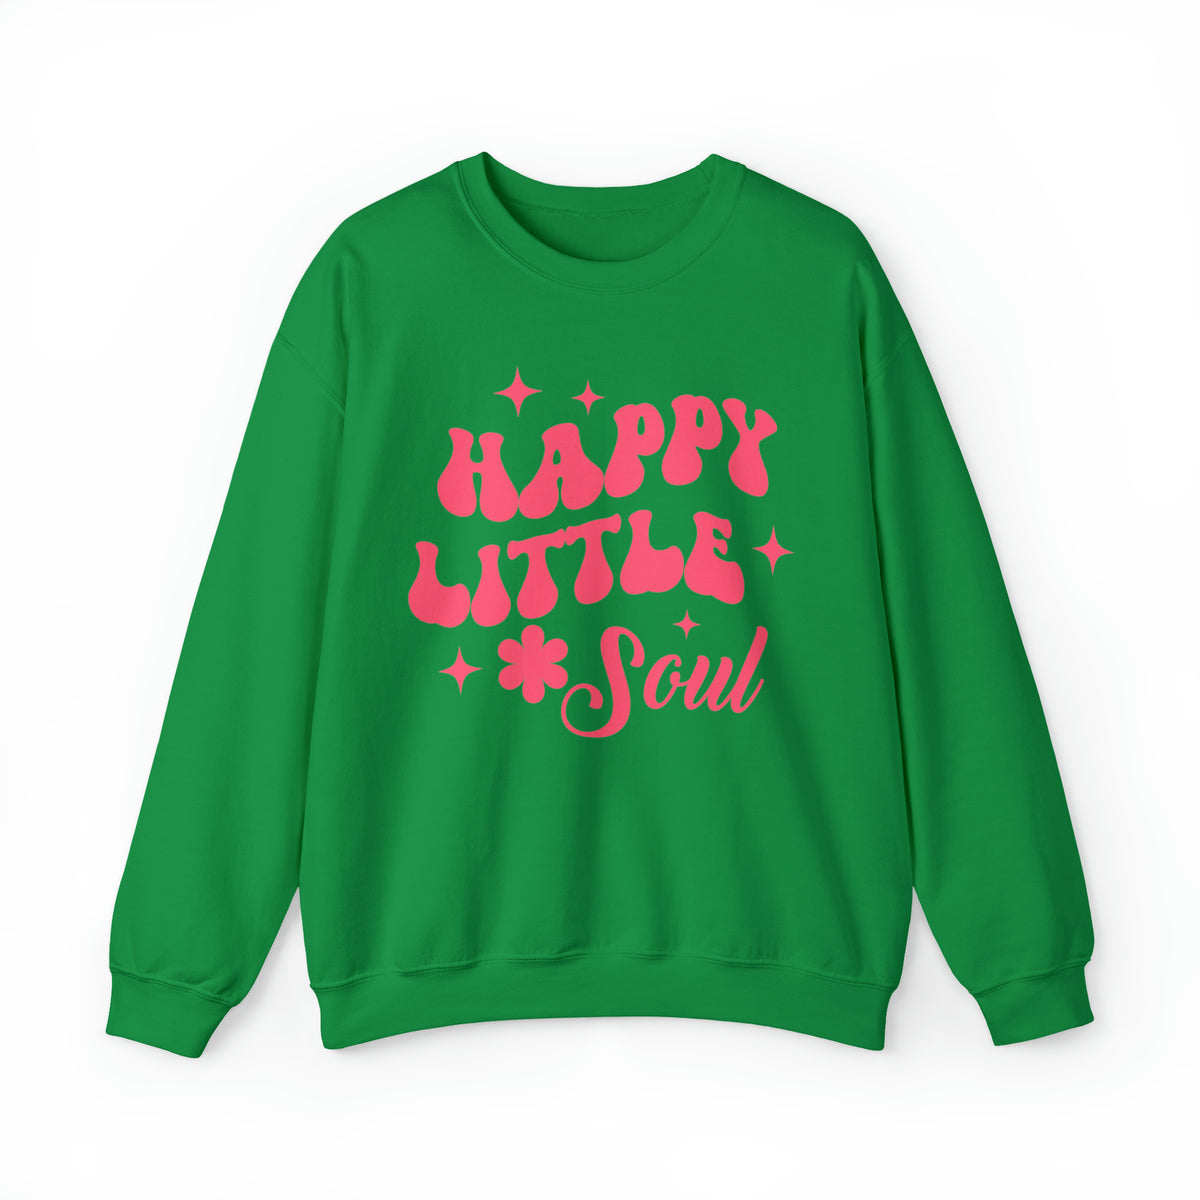 Happy Little Soul Sweatshirt, Happy Vibes Sweatshirt, Positivity Sweatshirt, Boho Sweatshirt, Hippie Sweater